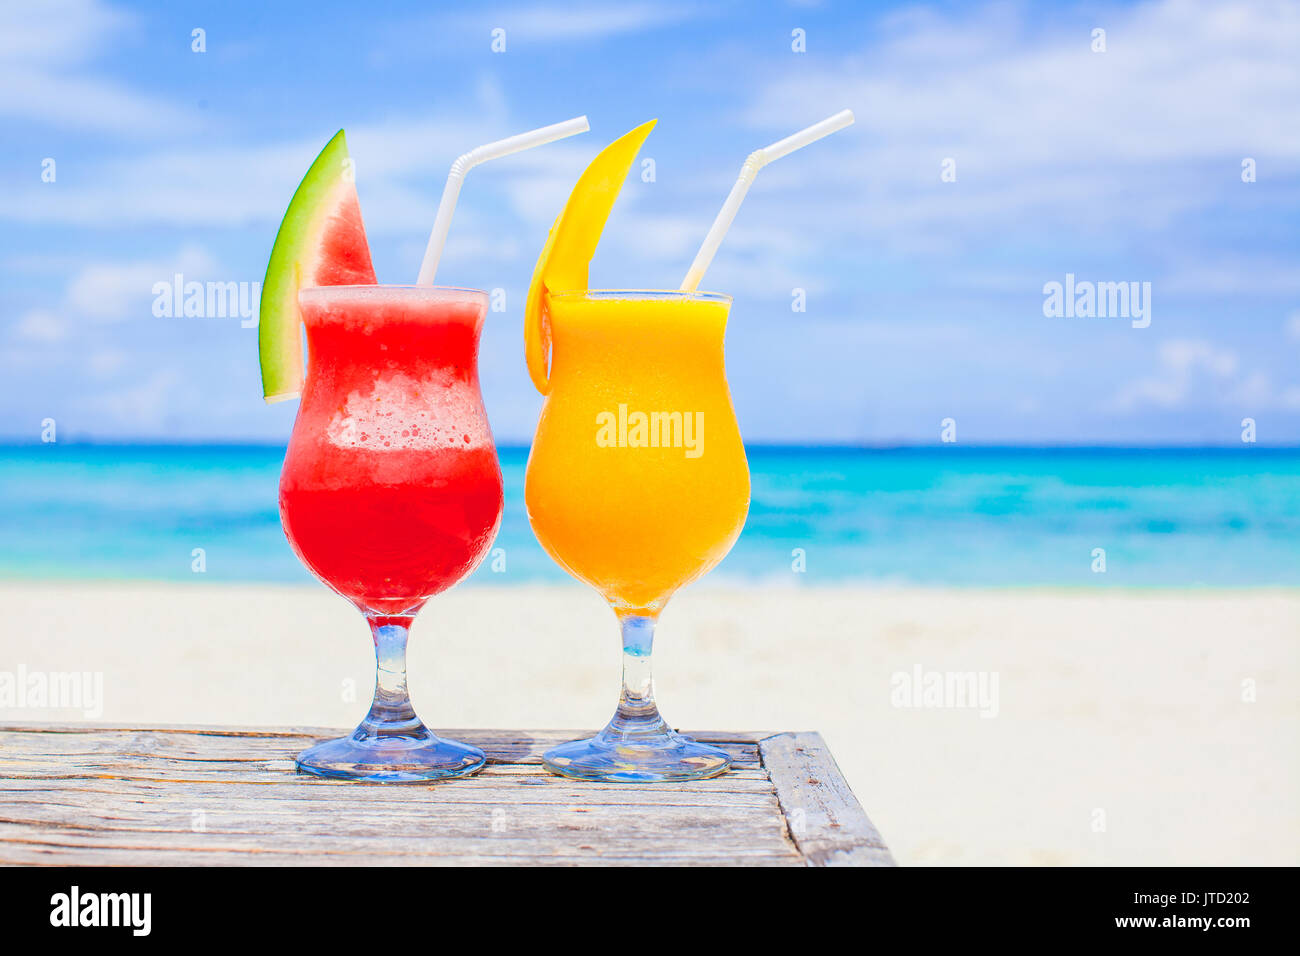 Frische Melone und Mango Cocktails auf dem Hintergrund der türkisfarbene Meer Stockfoto